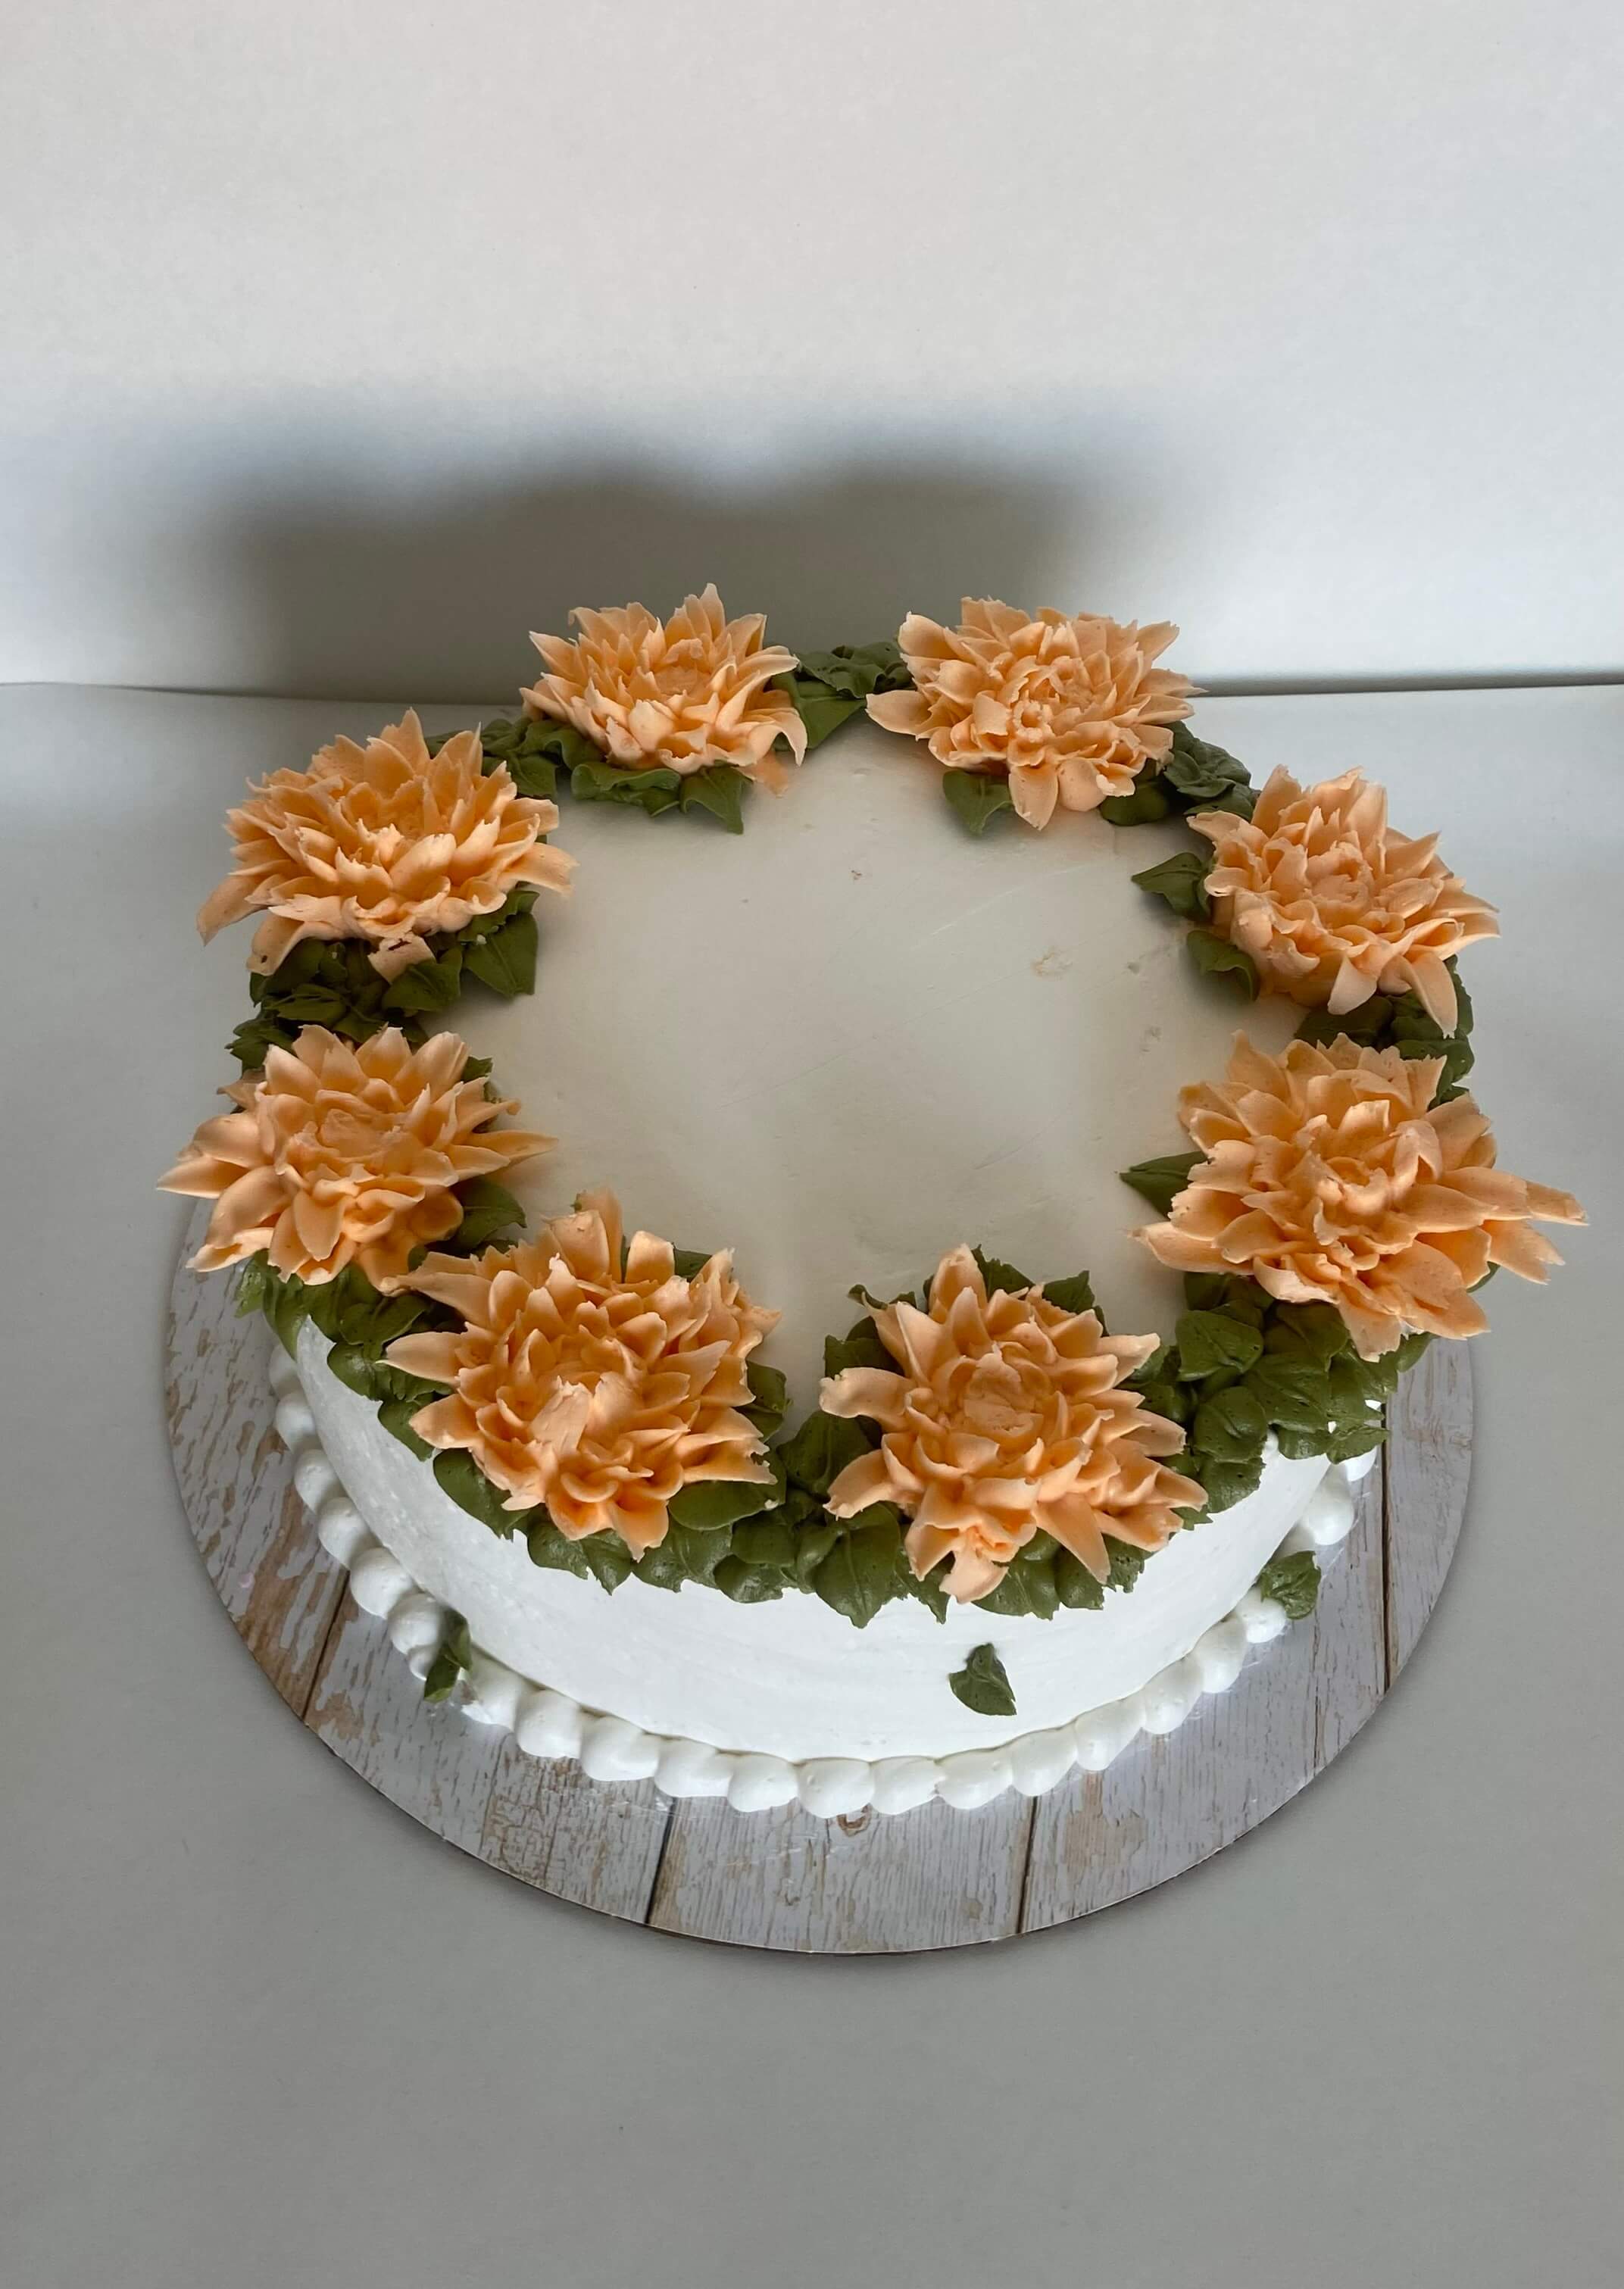 Image of Rachel D Nava's Cake